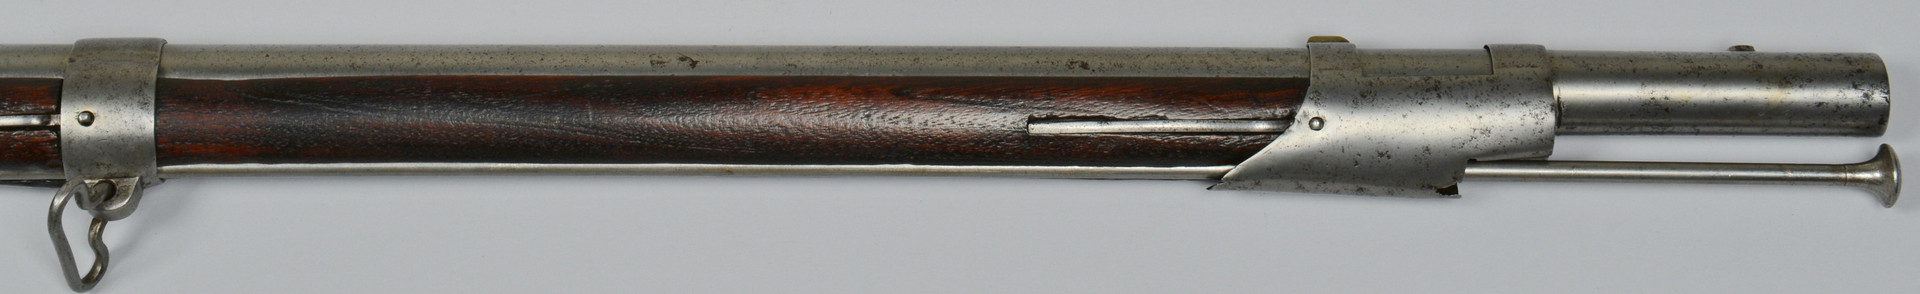 Lot 415: U. S. contract Model 1812 flintlock musket